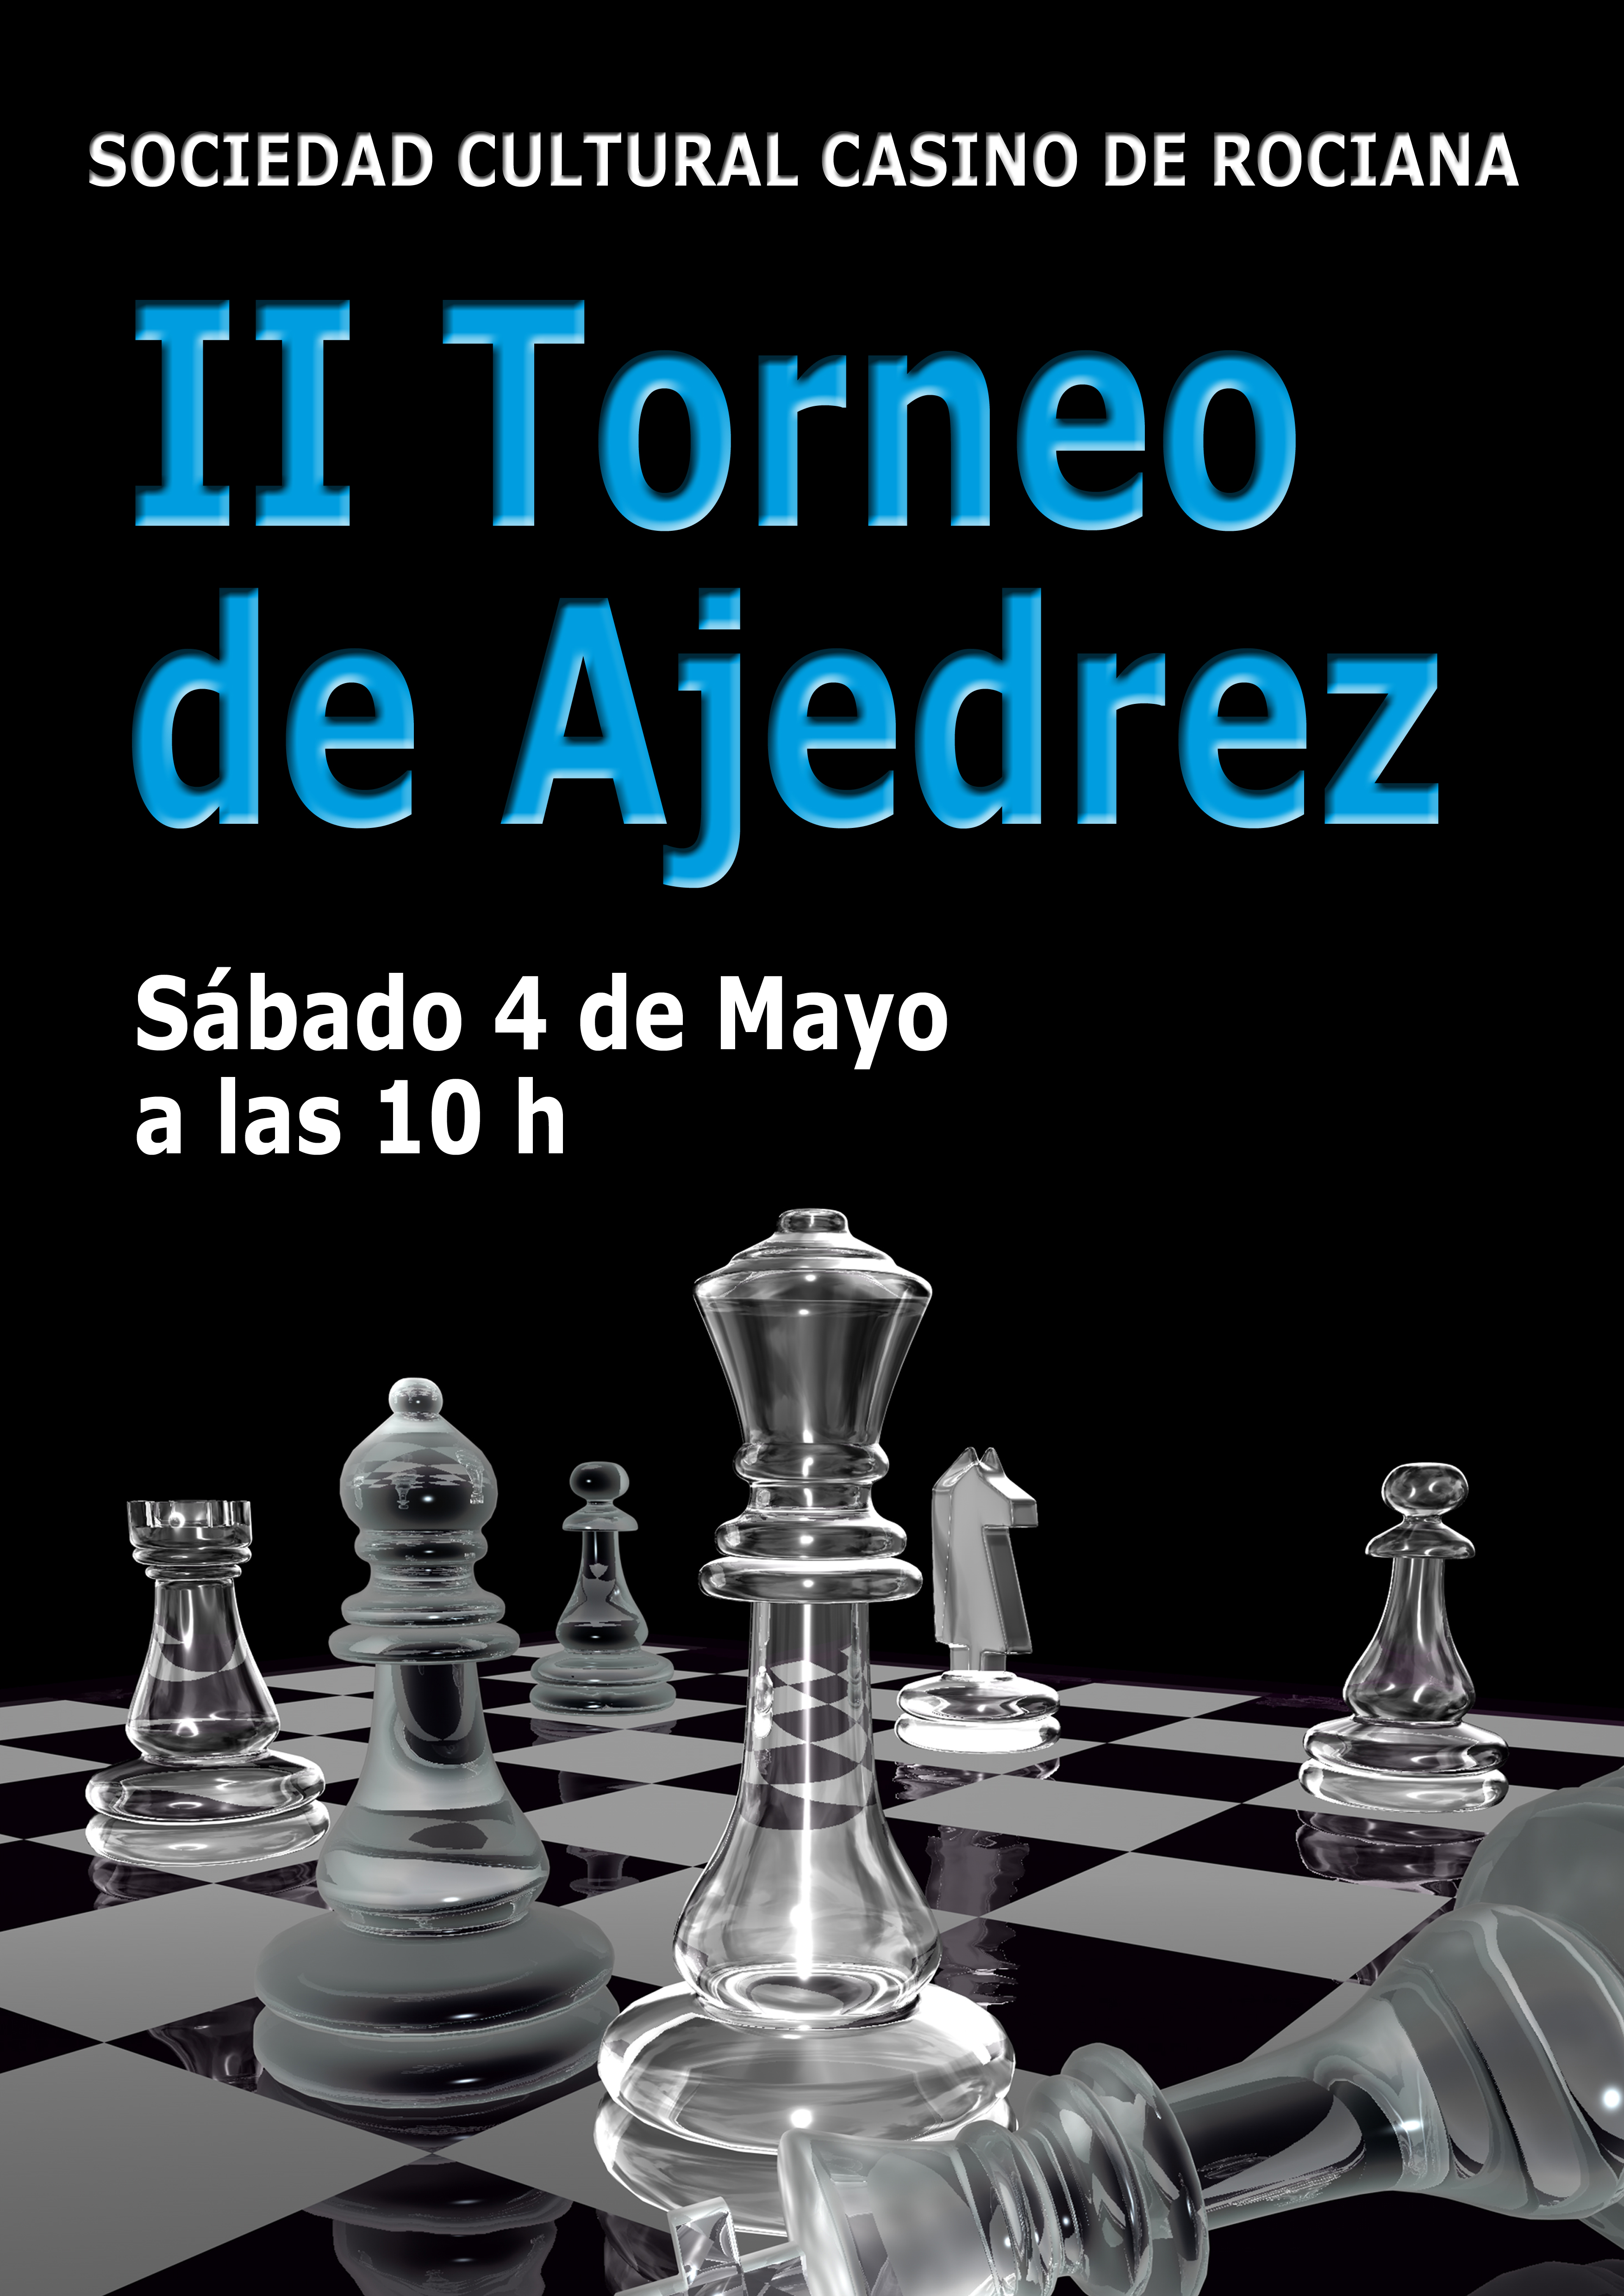 II-Torneo-Ajedrez II Torneo de Ajedrez Sociedad Casino de Rociana